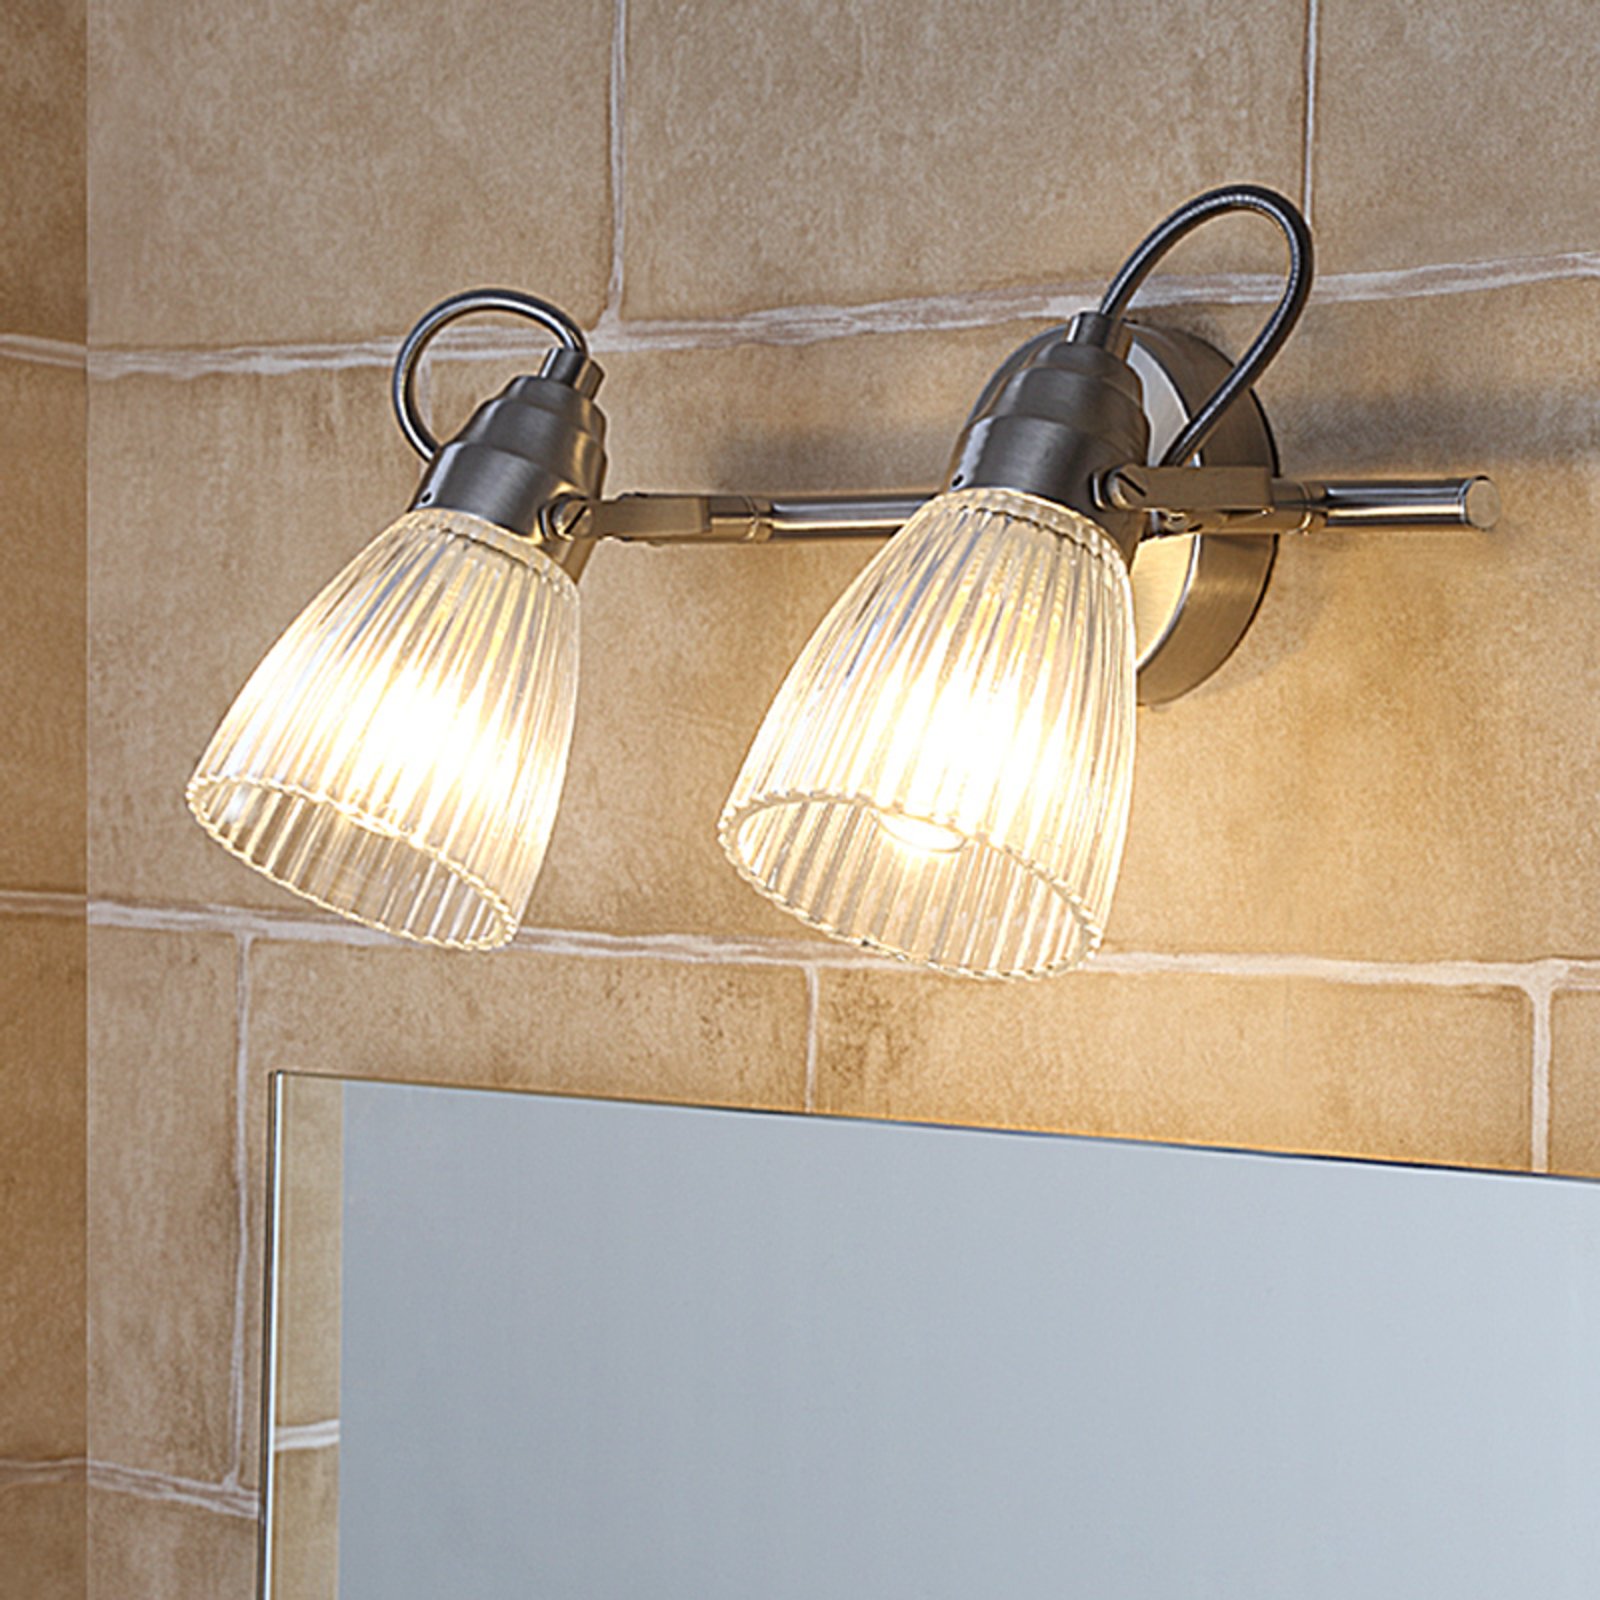 Kara bathroom wall light, 2-bulb, IP44